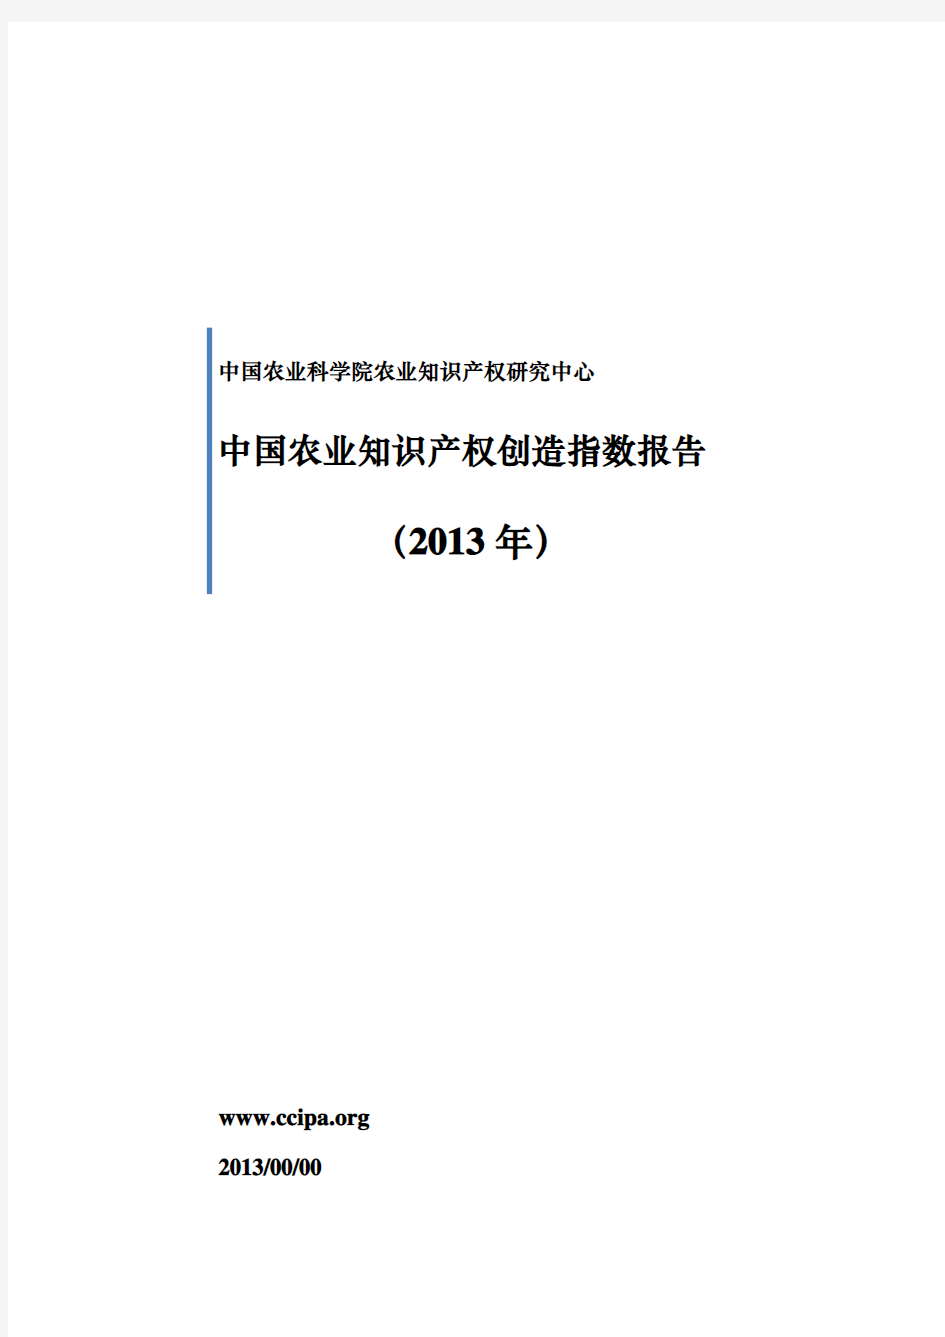 中国农业知识产权创造指数报告(2013年)